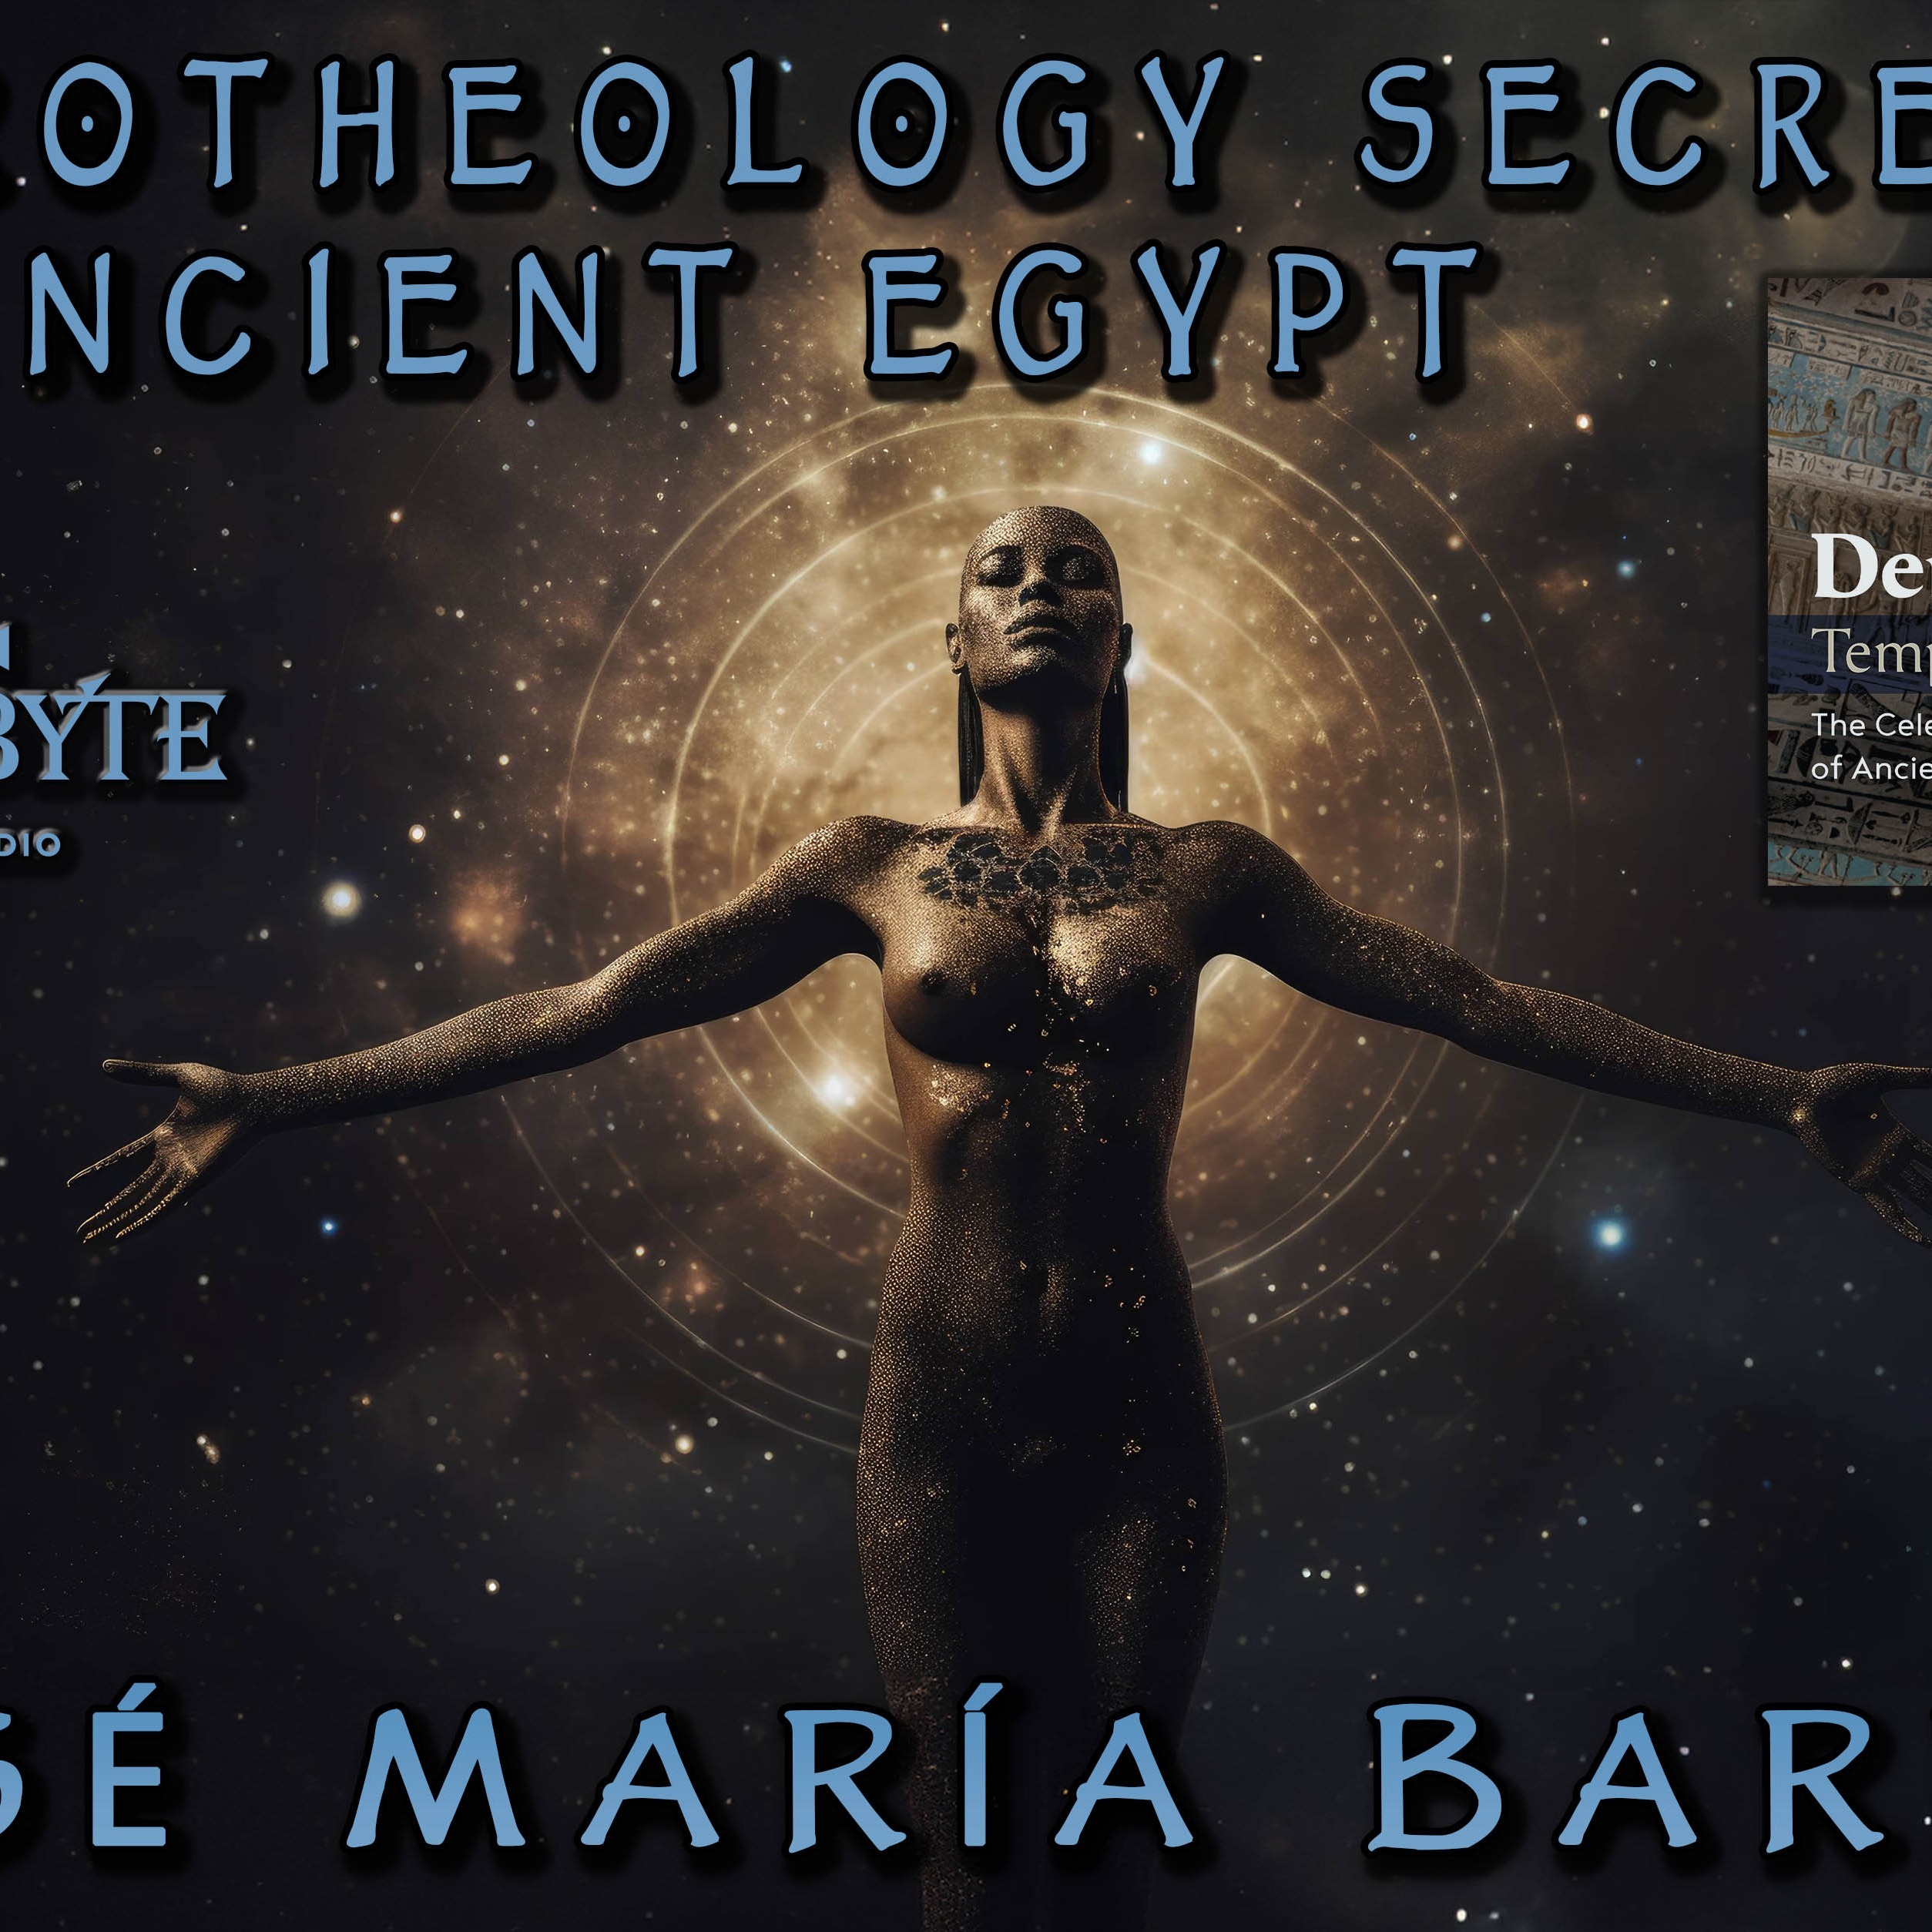 José María Barrera on Astrotheology Secrets of Ancient Egypt